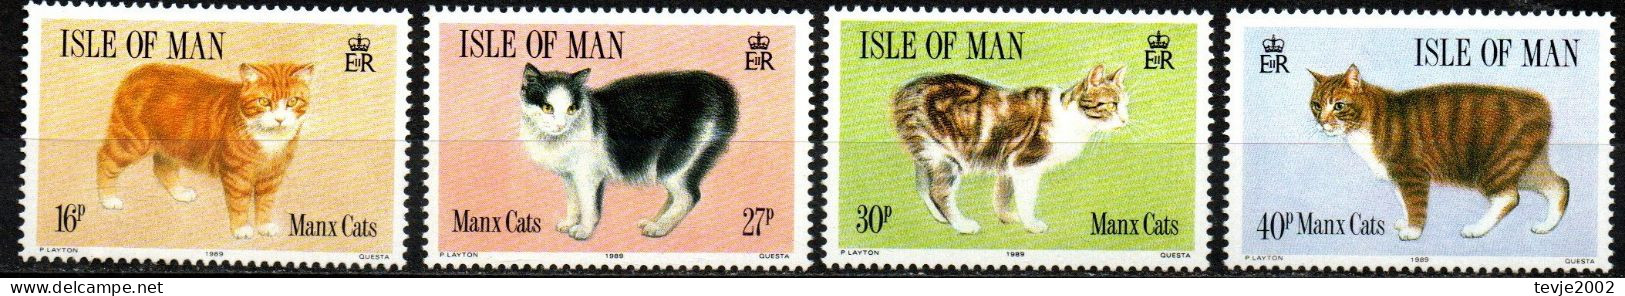 Isle Of Man 1989 - Mi.Nr. 383 - 389 - Postfrisch MNH - Tiere Animals Katzen Cats - Gatti